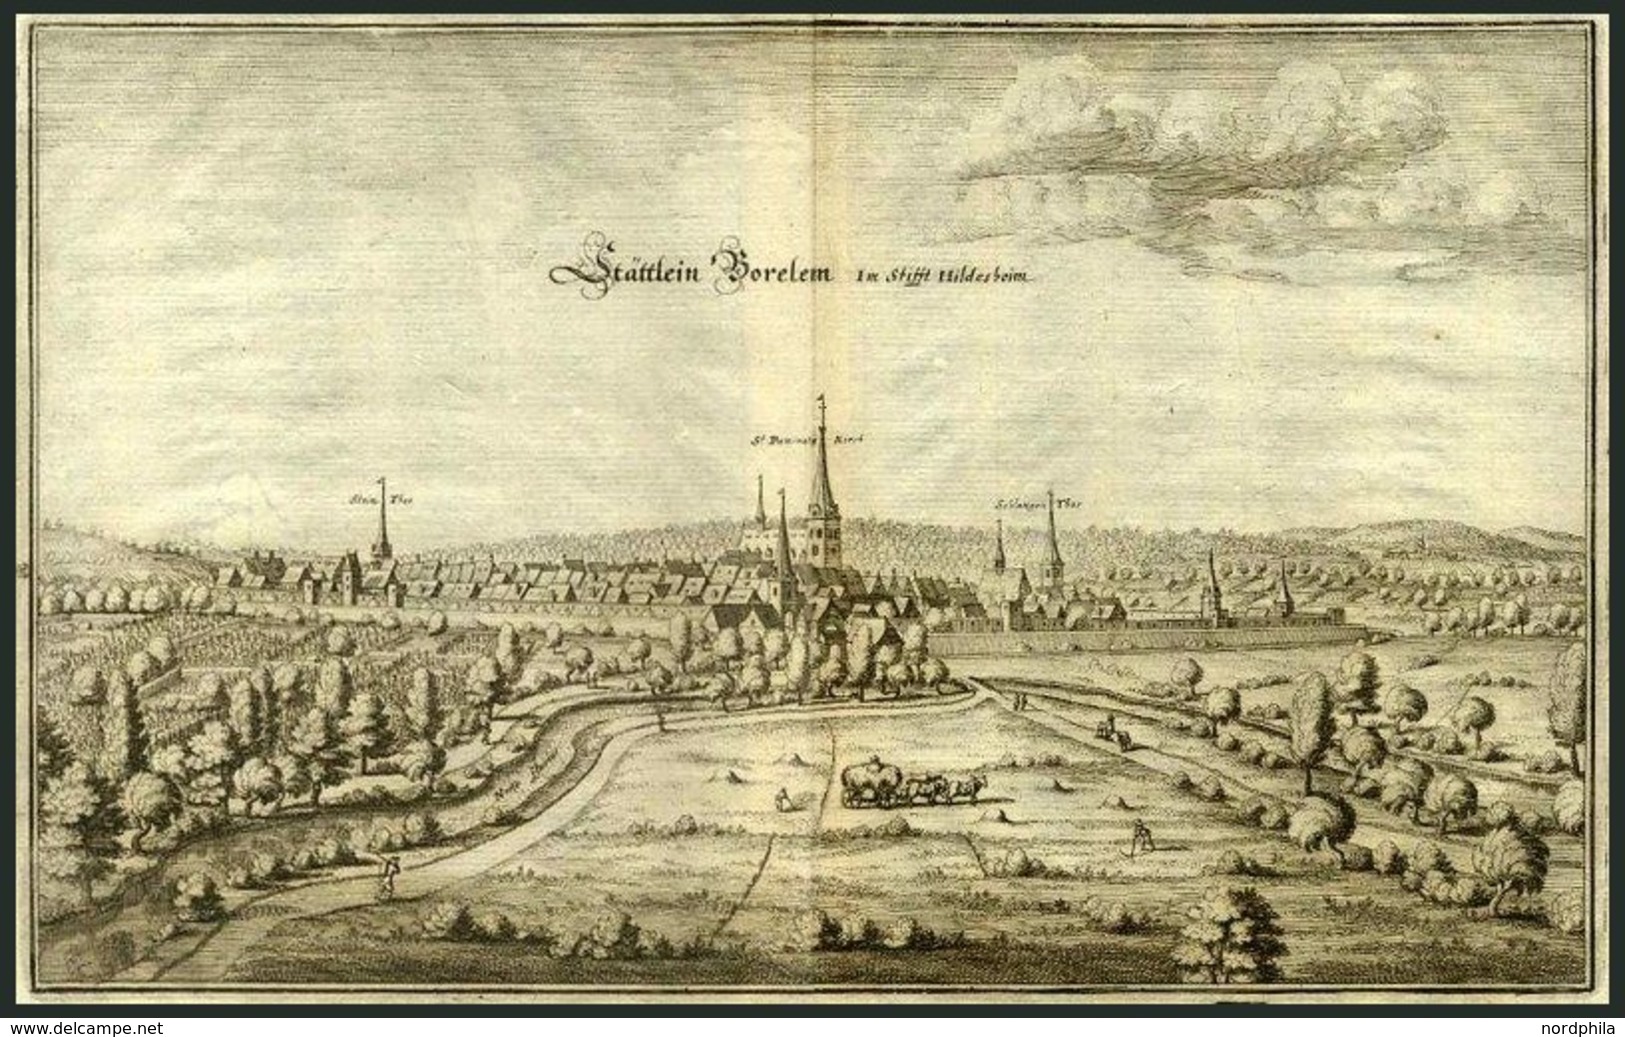 BORELEM, Gesamtansicht, Kupferstich Von Merian Um 1645 - Litografia